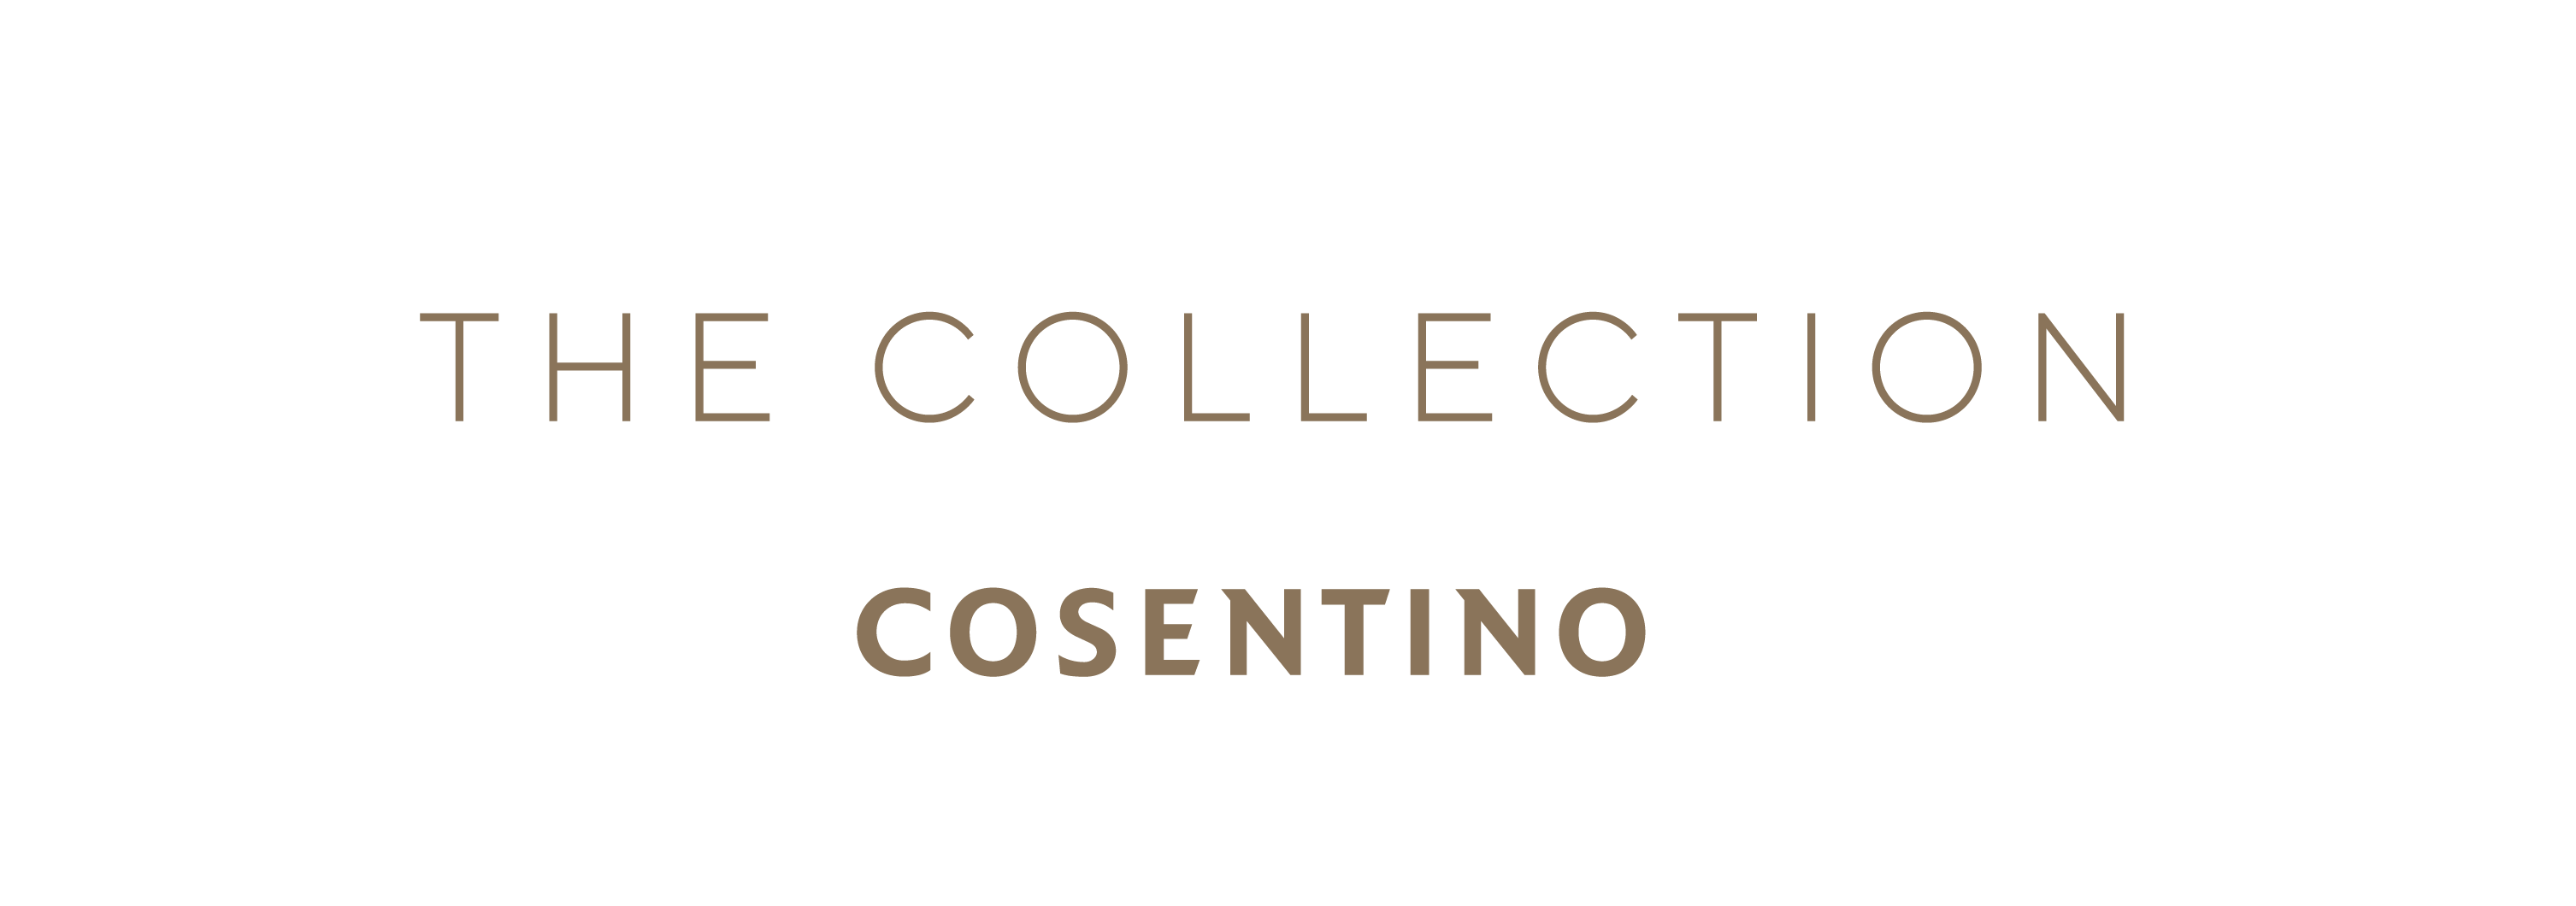 Image 33 of Mesa de trabajo 4 copia 4@4x 1 1 in Cosentino unveils "The Collection Dekton® 2020" - Cosentino